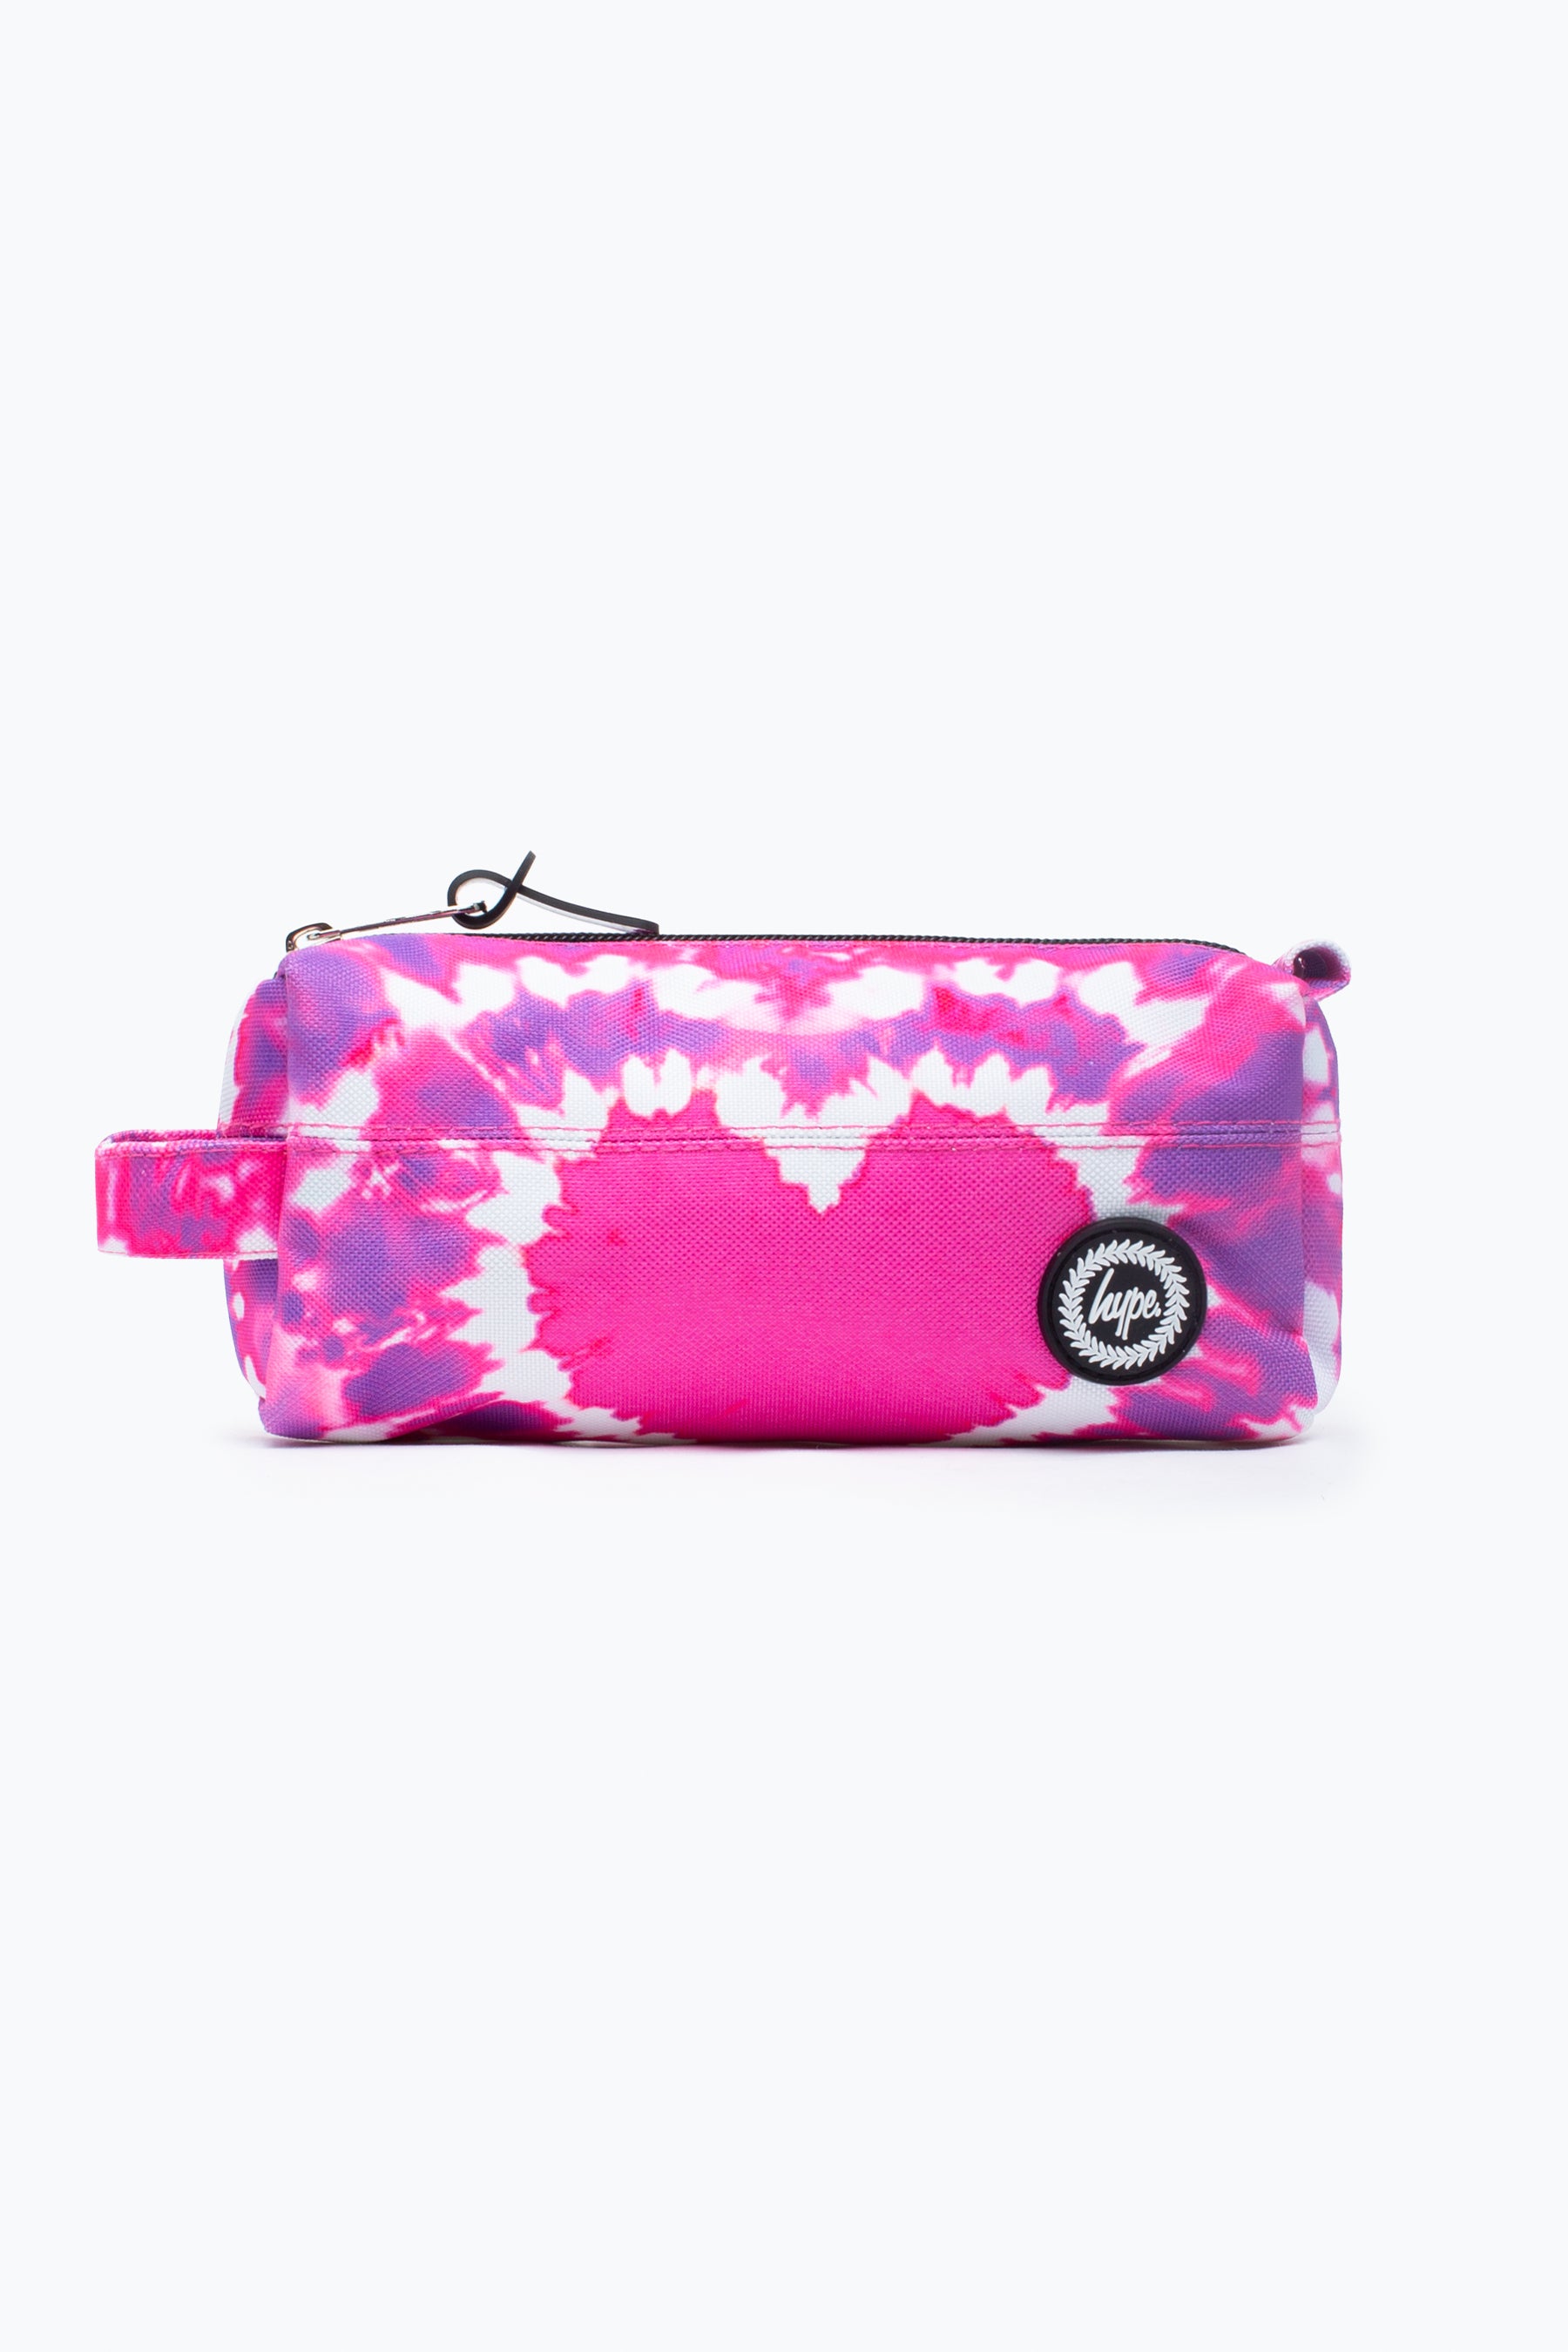 hype pink heart hippy tie dye pencil case